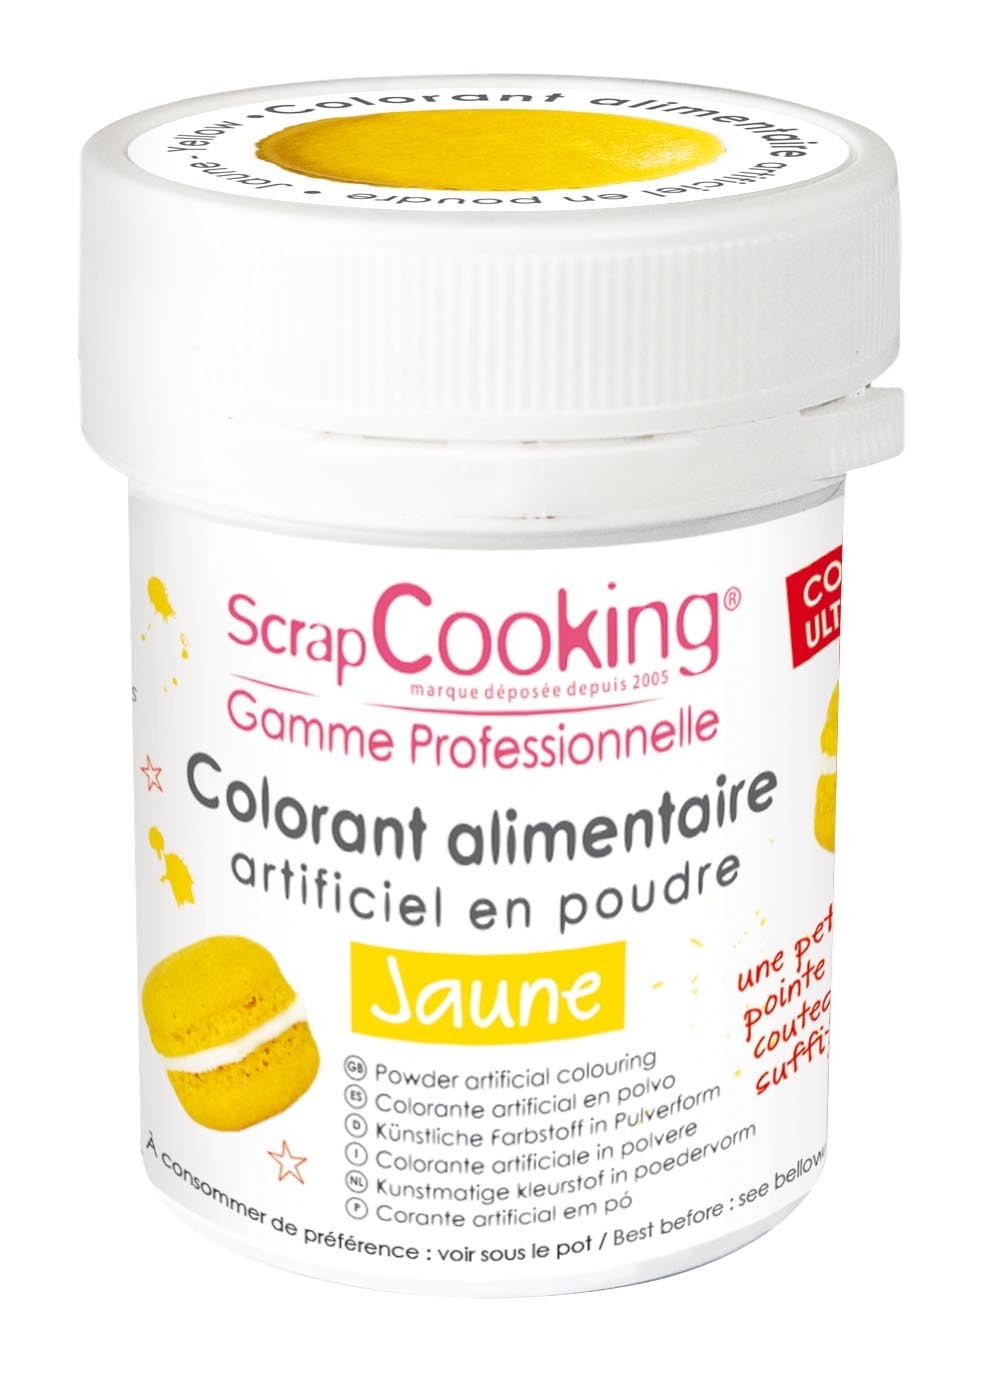 Colorant alimentaire (artificiel) Jaune - Scrapcooking référence 4037